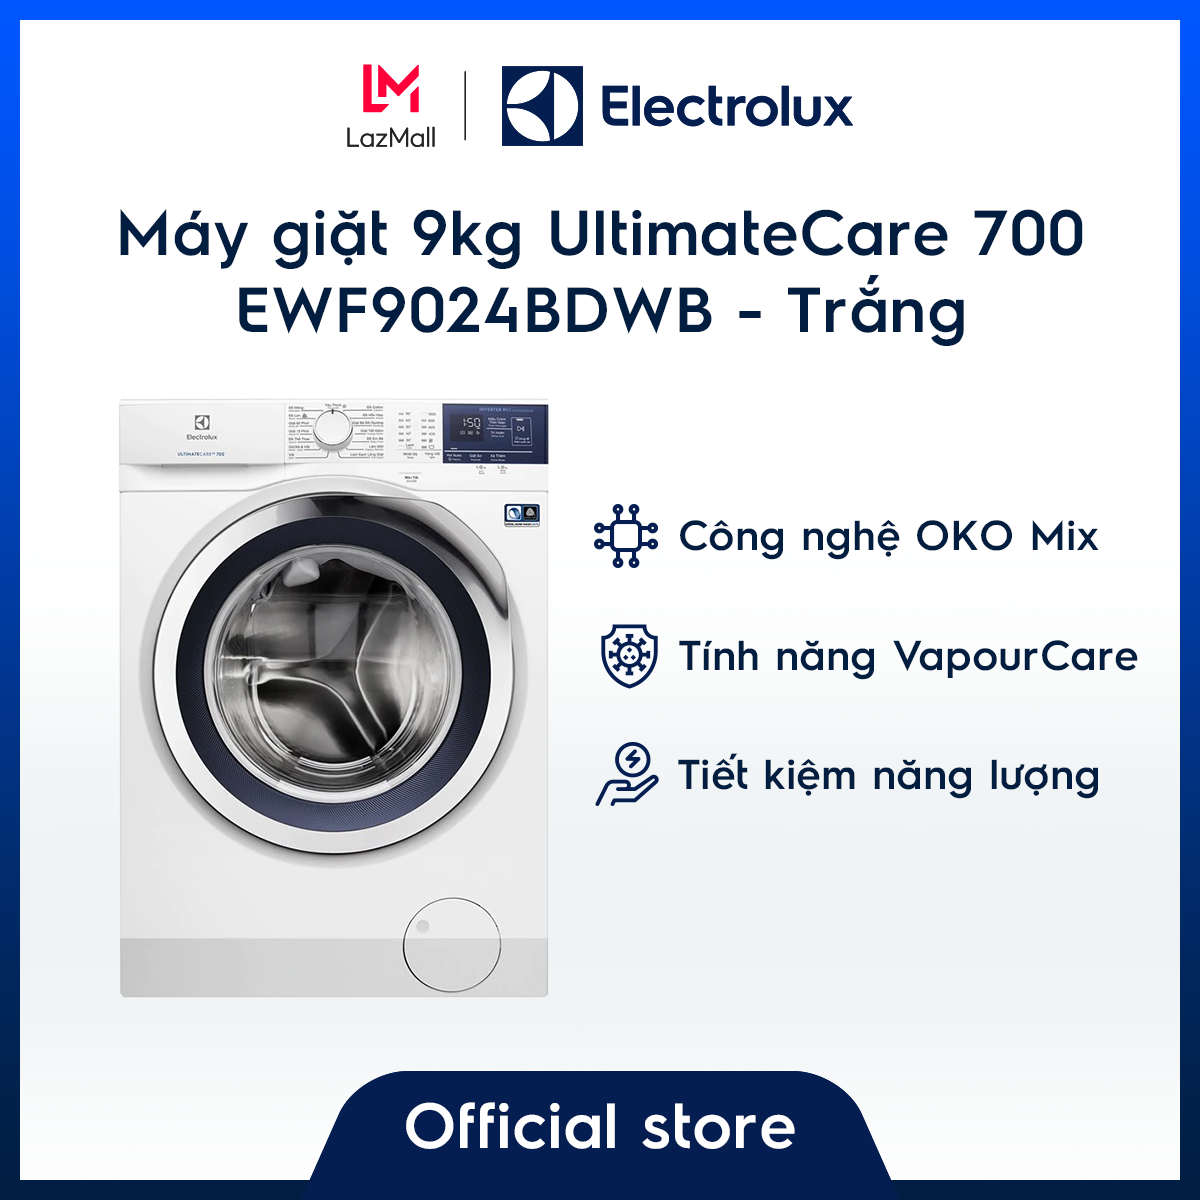 [Miễn phí công lắp đặt chính hãng] Máy giặt 9kg Electrolux UltimateCare 700 EWF9024BDWB – Màu Trắng – OKO Mix – Công nghệ Auto Sense – Tiết kiệm năng lượng – Hàng chính hãng